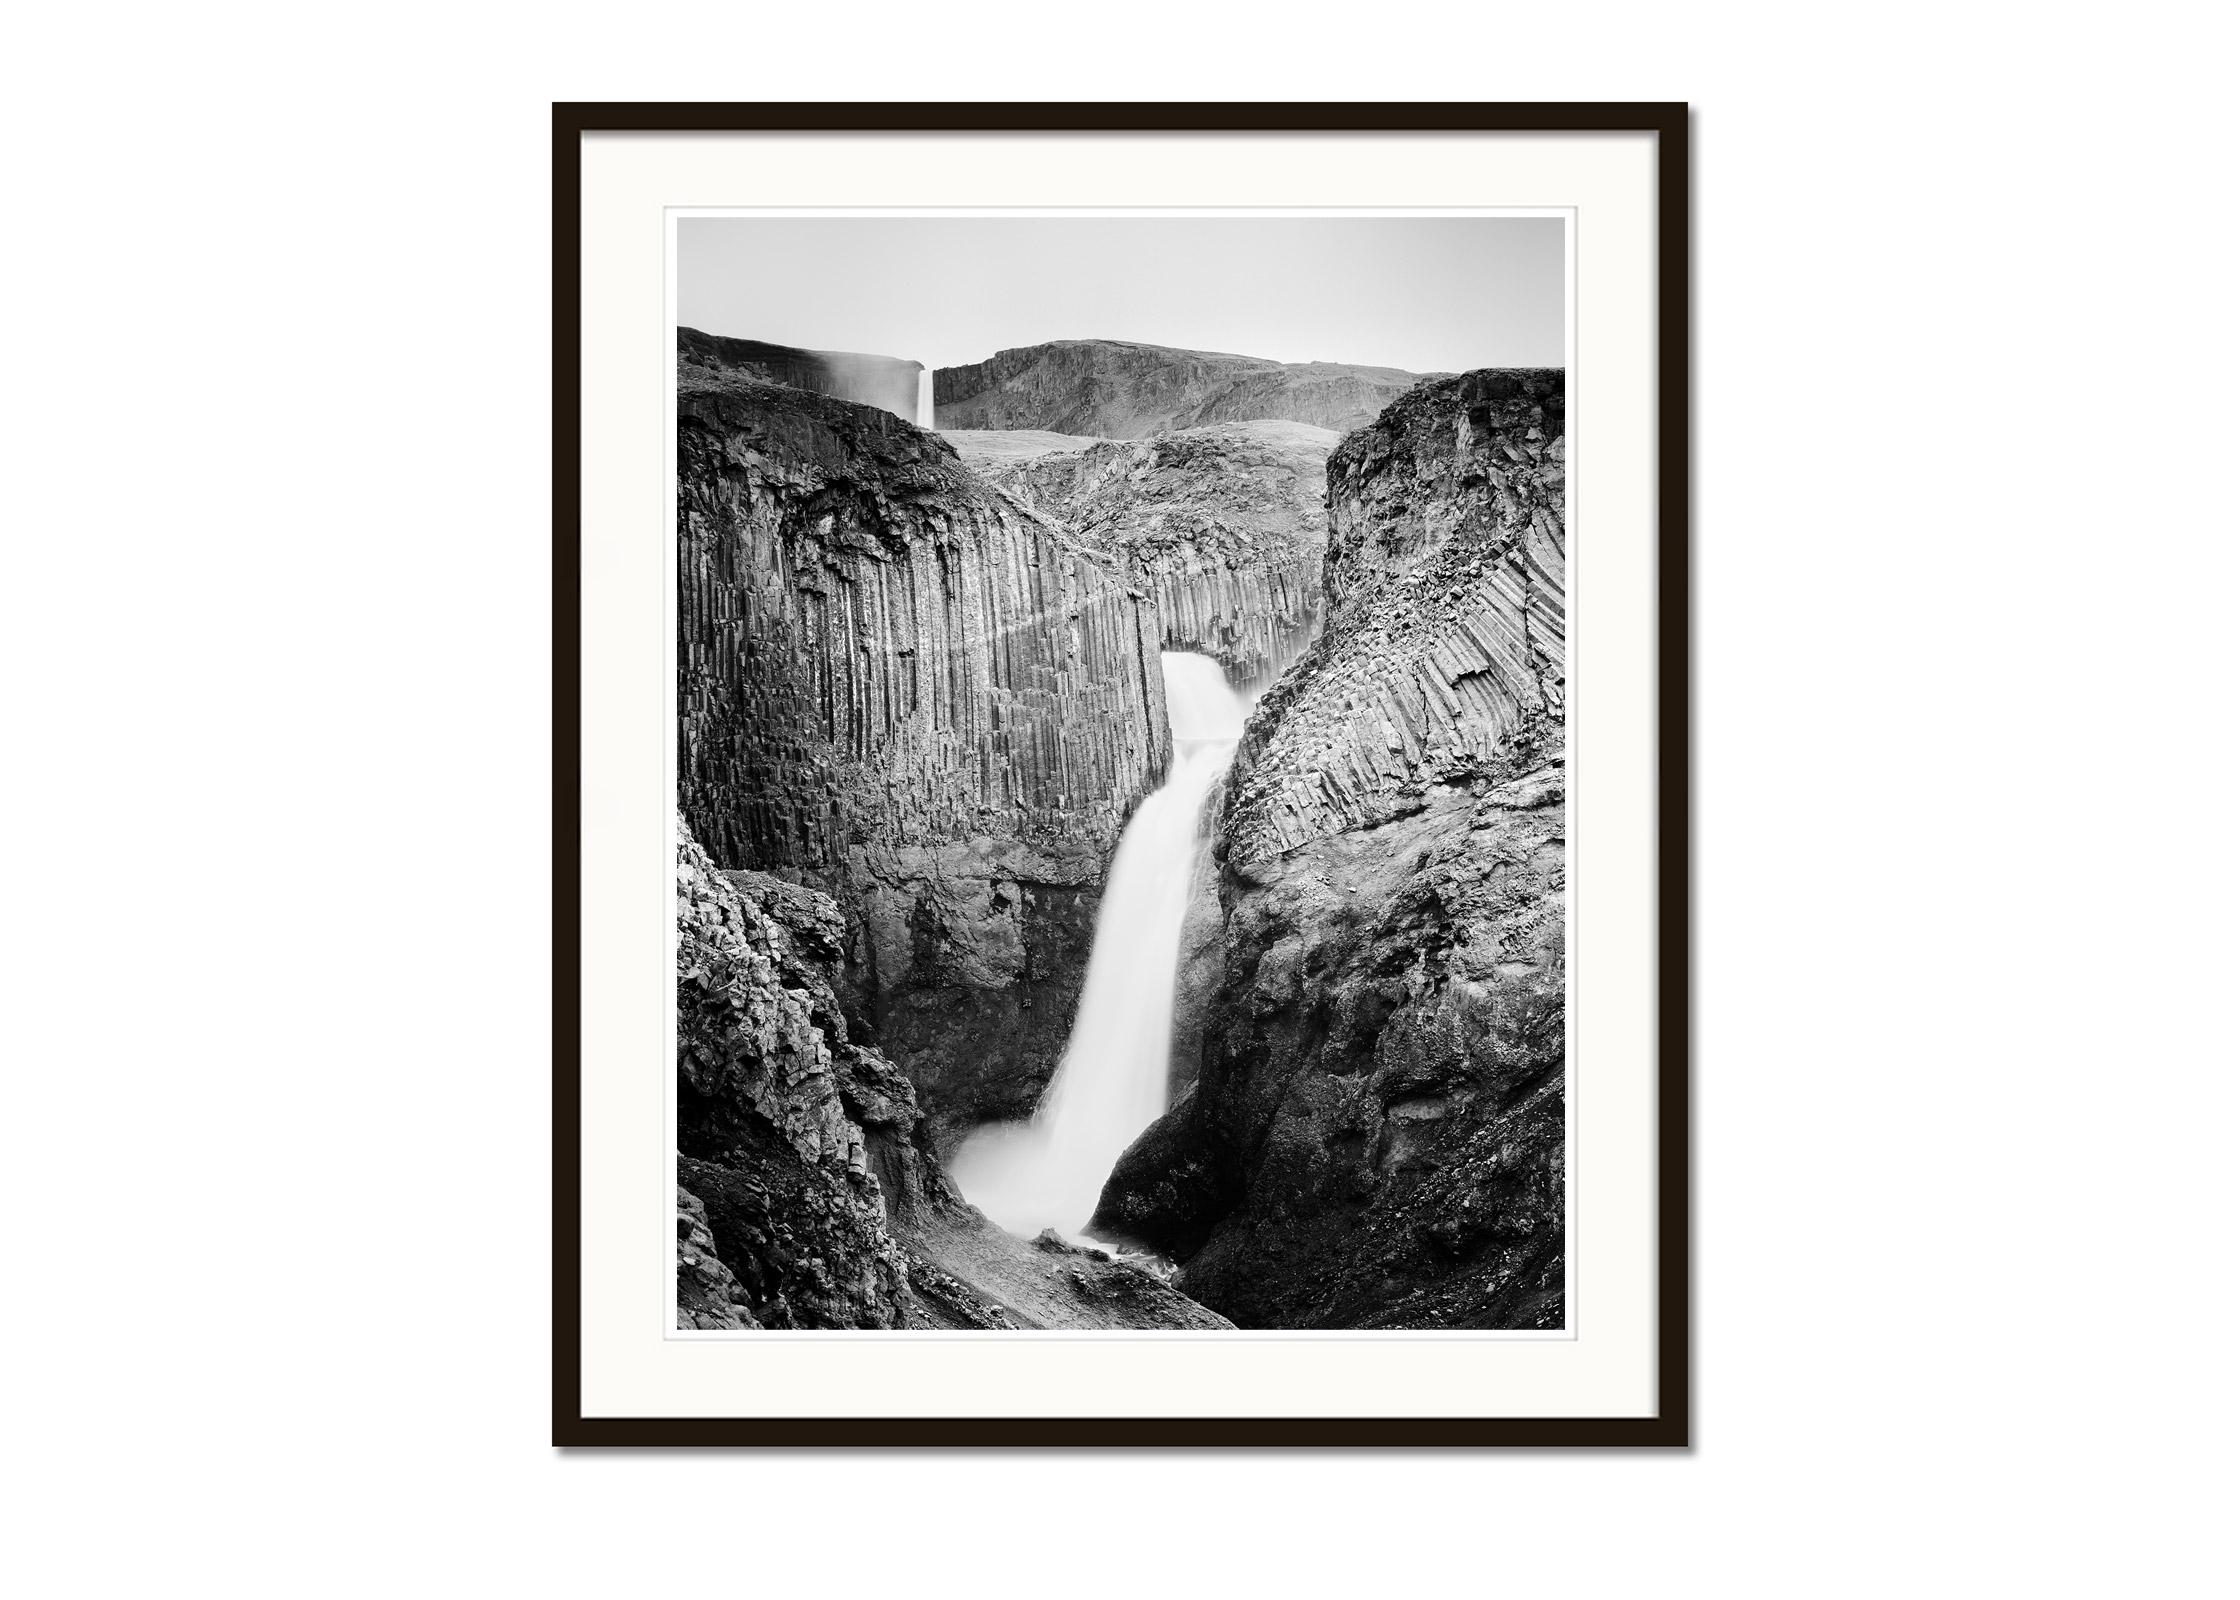 Schwarz-Weiß-Fotografie mit Langzeitbelichtung für Wasserlandschaften - Landschaftsfotografie. Pigmenttintendruck in einer limitierten Auflage von 7 Exemplaren. Alle Drucke von Gerald Berghammer werden auf Bestellung in limitierter Auflage auf